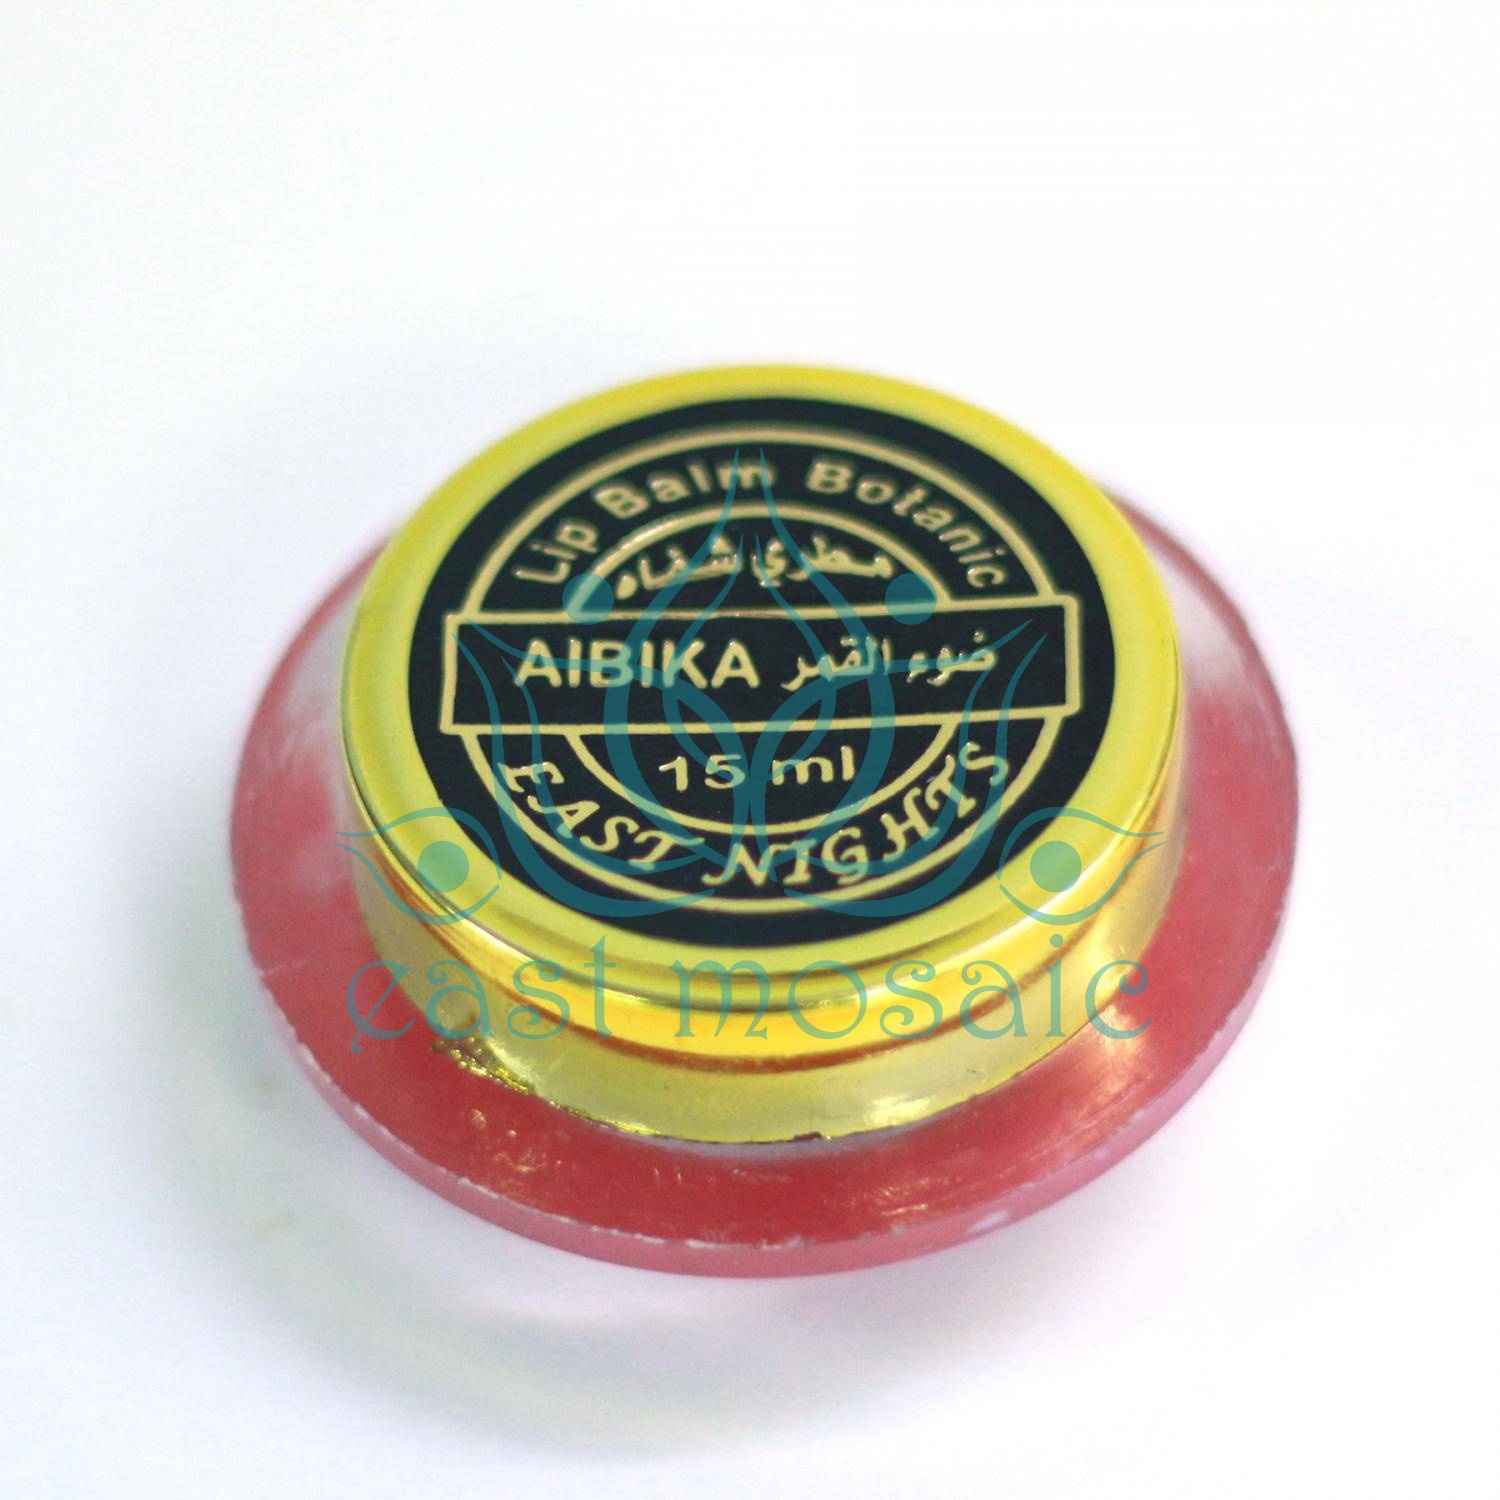 целебно- уходовый бальзам для губ  Aibika «Лунная госпожа» с листьями авокадо сорта Калифи